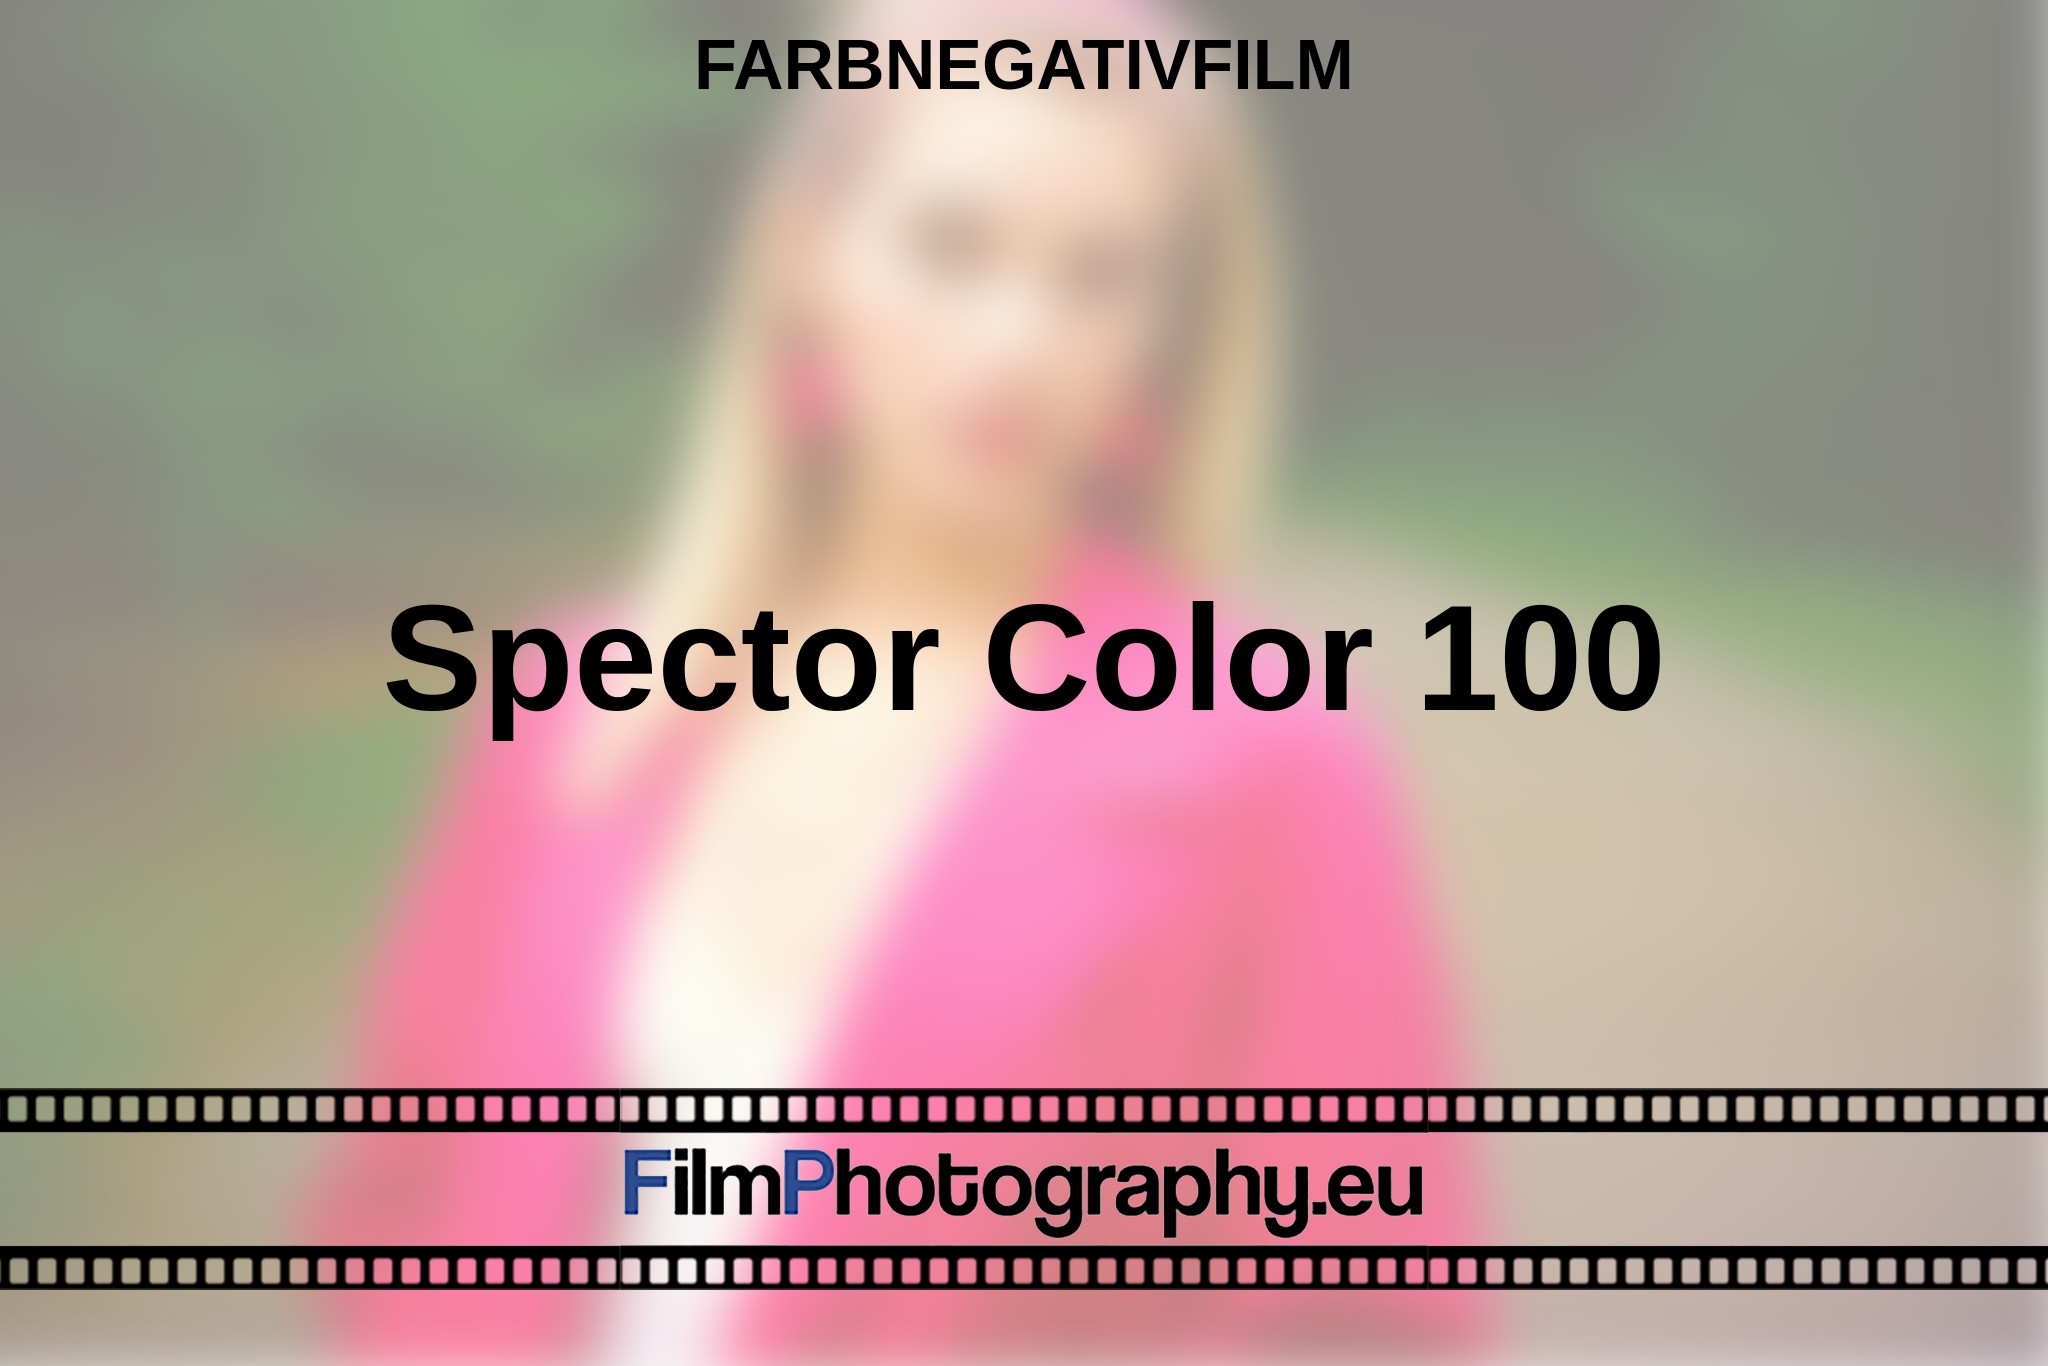 spector-color-100-farbnegativfilm-bnv.jpg